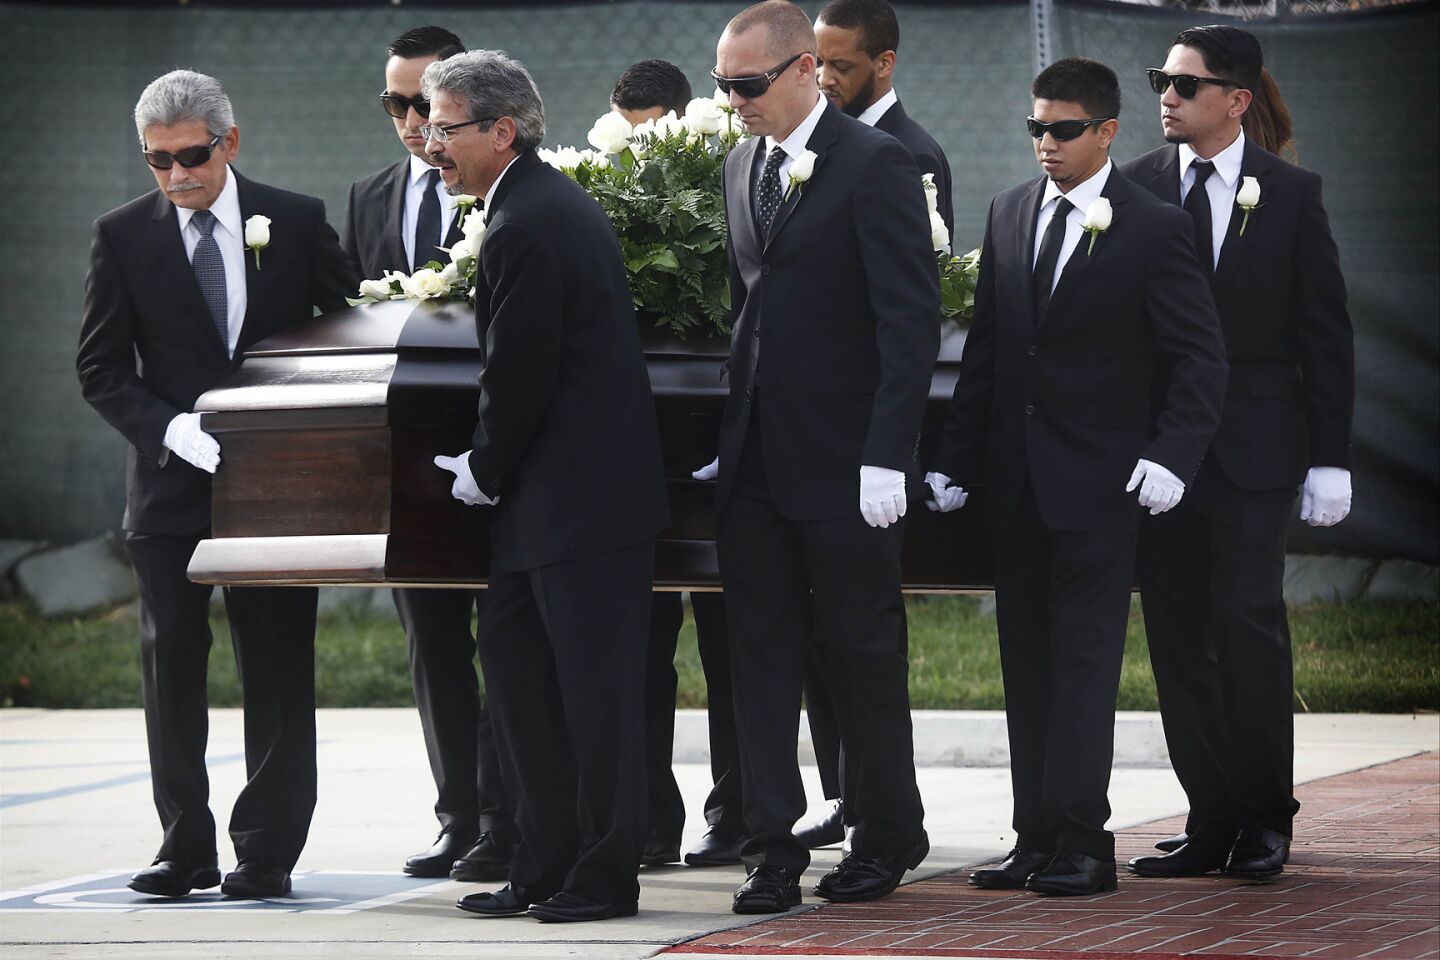 Yvette Velasco's funeral